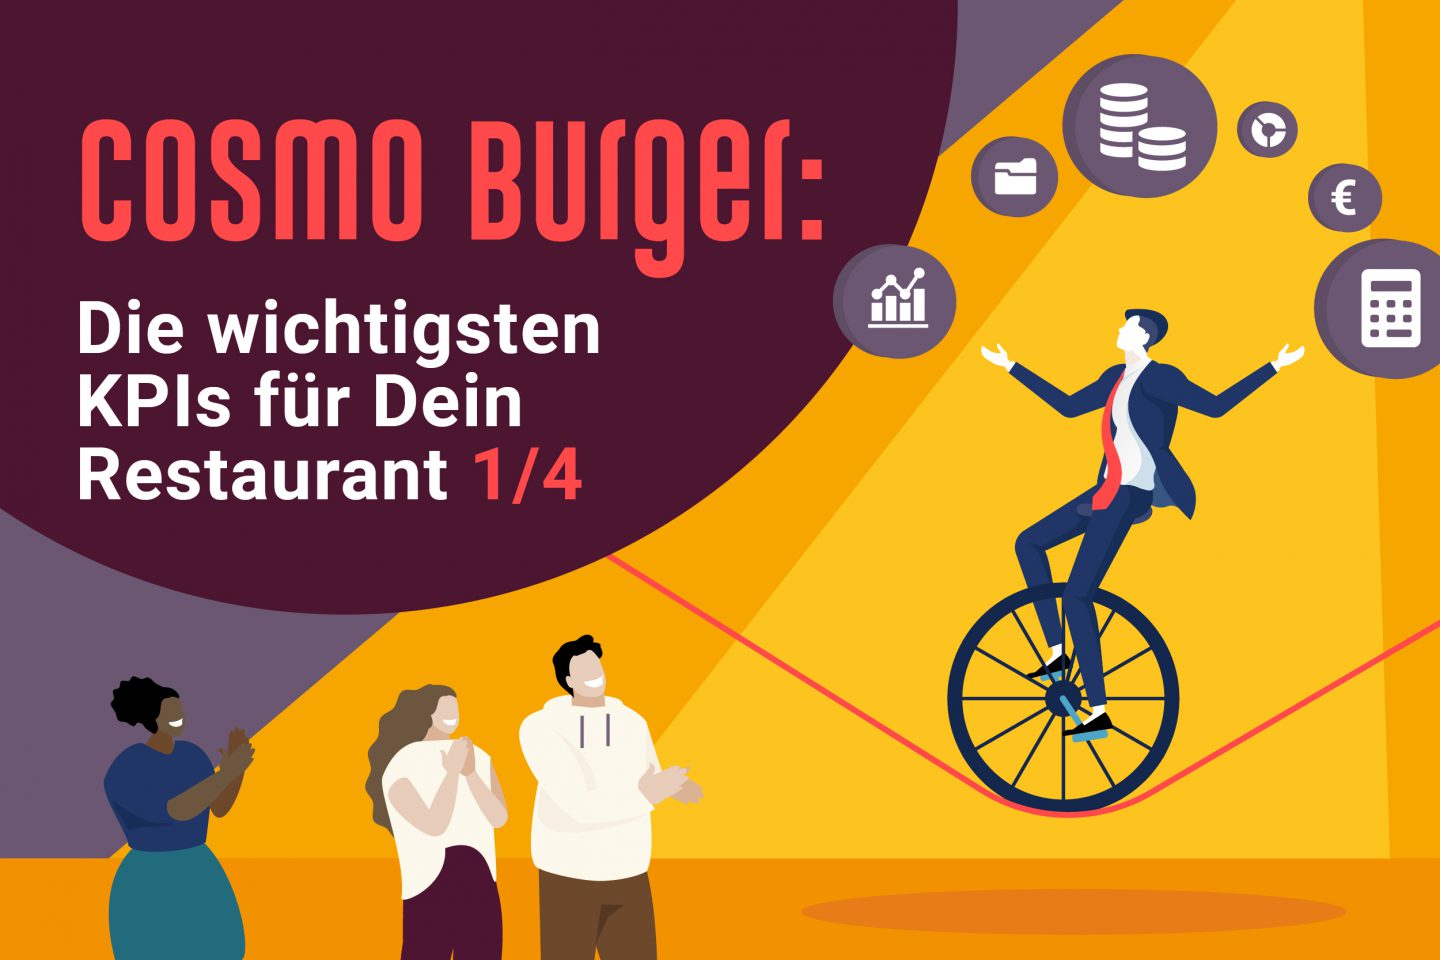 Die wichtigsten Kennzahlen für Dein Restaurant bei Cosmo Burger: Finanzen